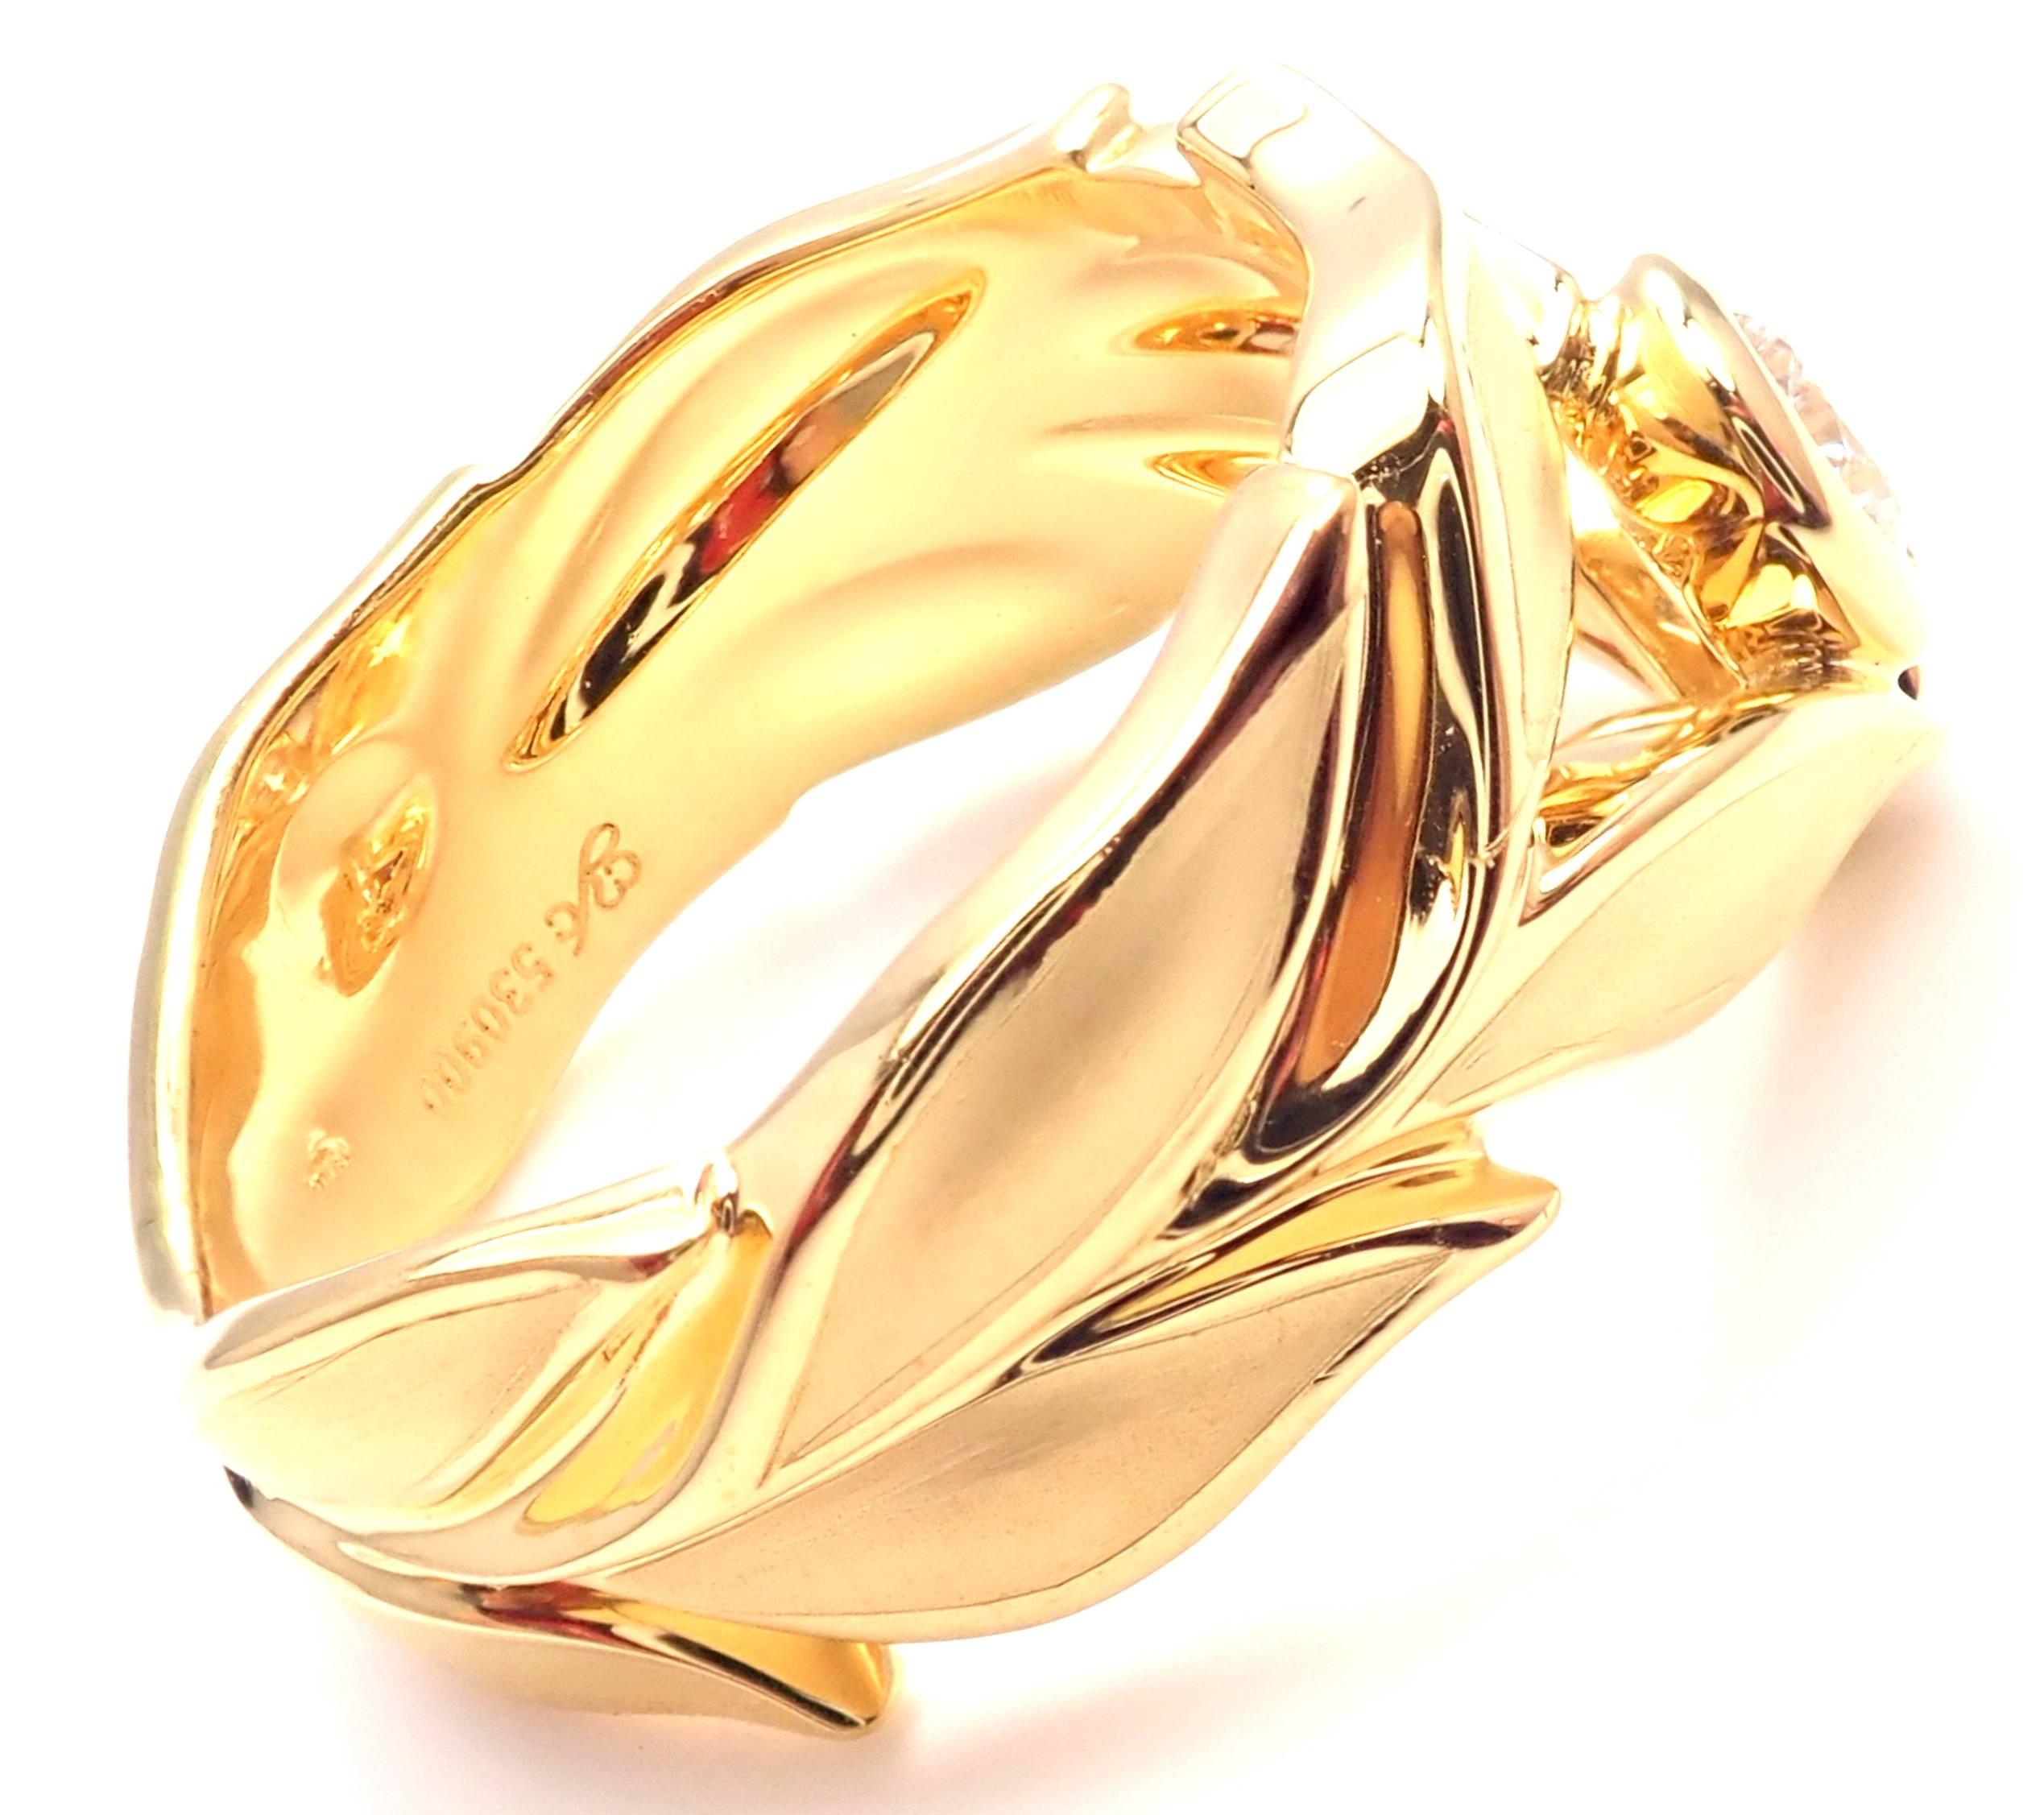 18k Gelbgold Mi Princes Greco Roman Diamond Band Ring von Carrera Y Carrera. 
Mit 1 runden Brillantschliff Diamant VS1 Klarheit, G Farbe Gesamtgewicht ca.: 0,25ct
Dieser Ring kommt mit Box Zertifikat und Tag. 
Einzelheiten: 
Ring Größe: 6.5
Gewicht: